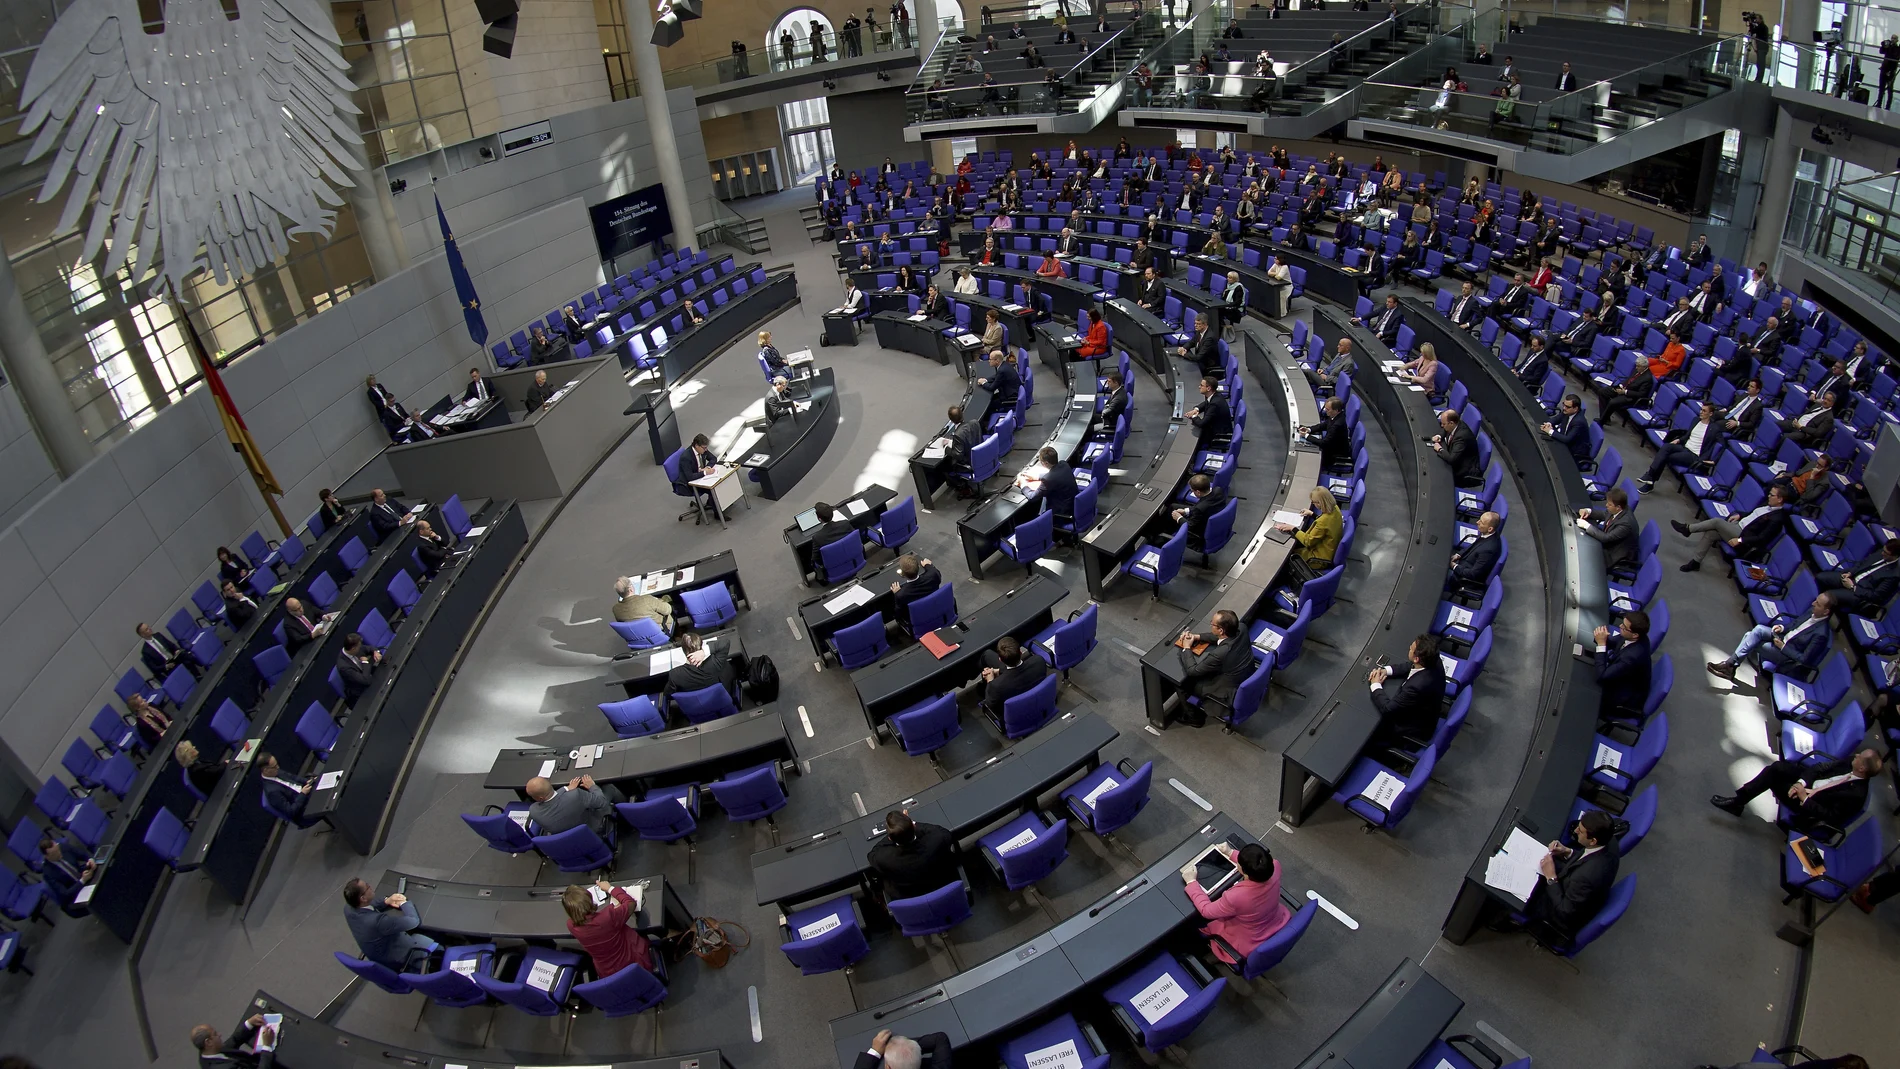 El crecimiento de diputados del Bundestag legislatura tras legislatura dificulta el trabajo eficaz del Parlamento